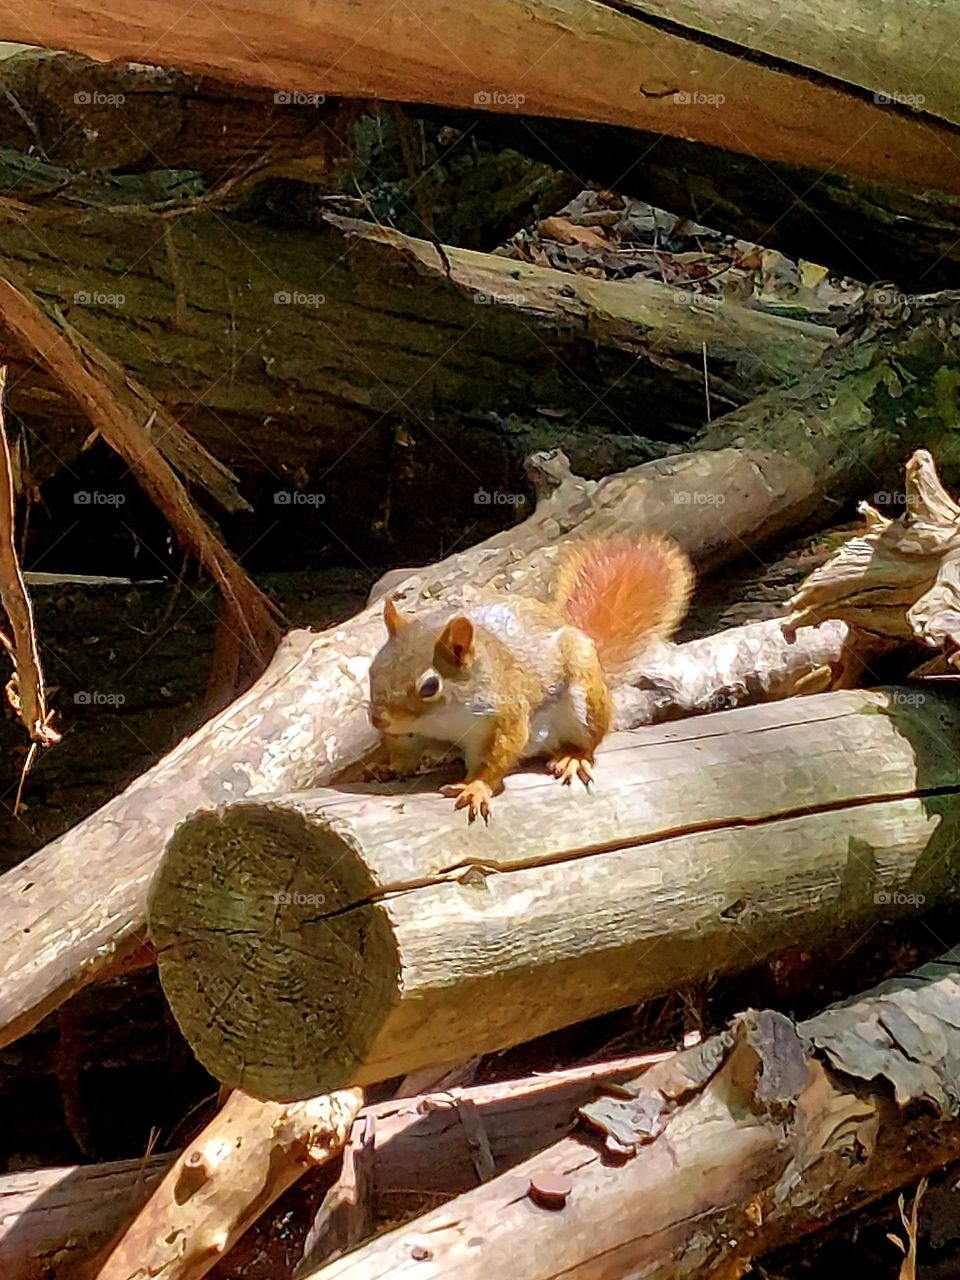 Baby squirrel